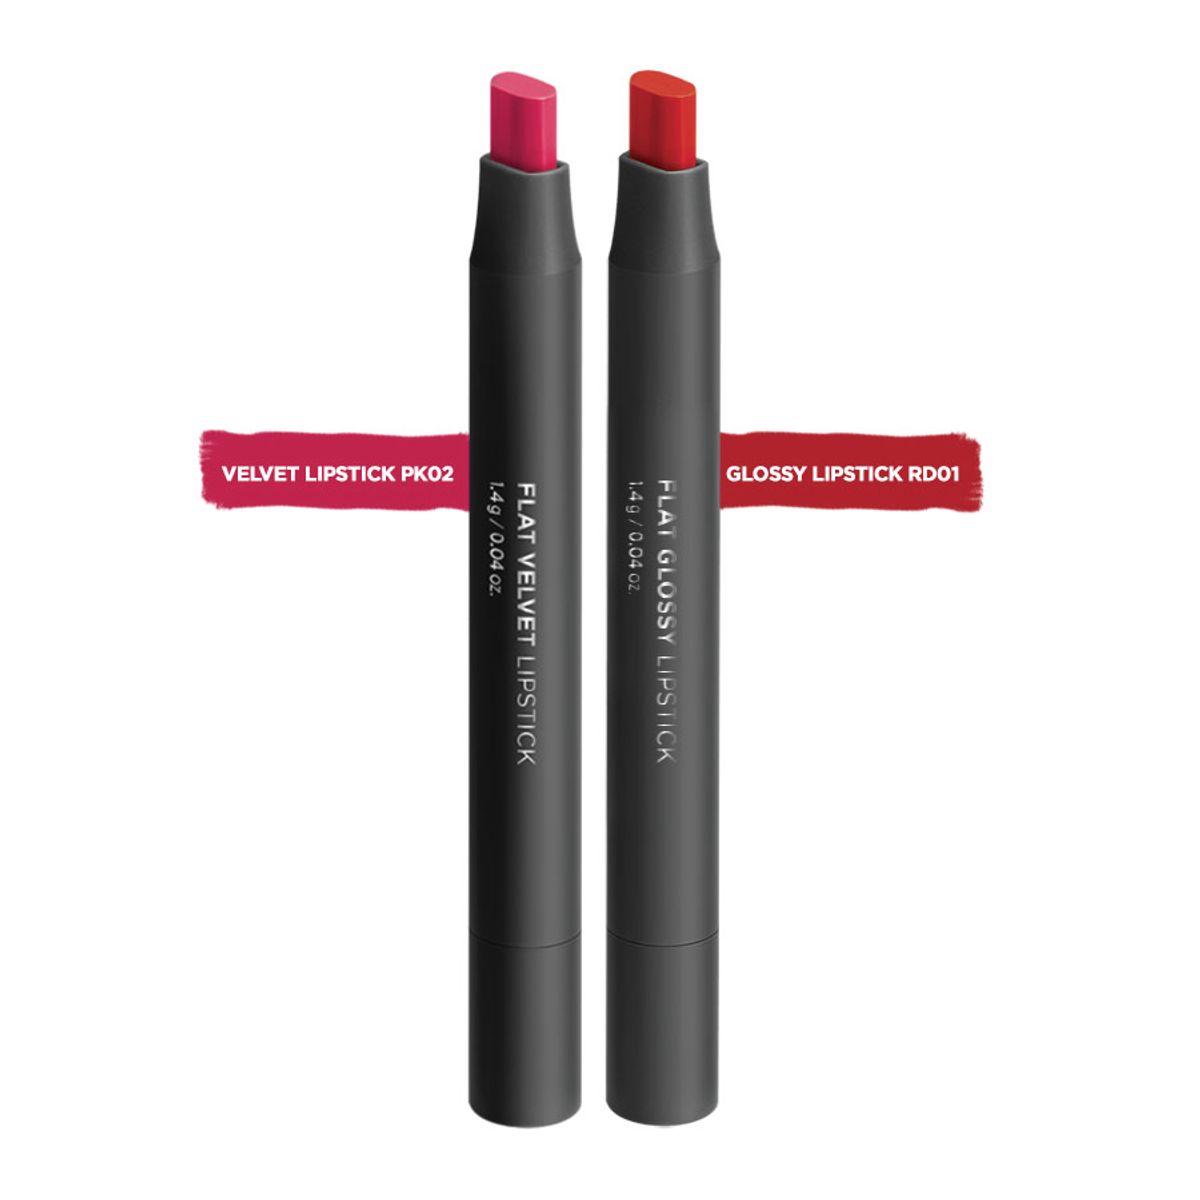 bo-son-flat-lipstick-velvet-lipstick-pk02-glossy-lipstick-rd01-1